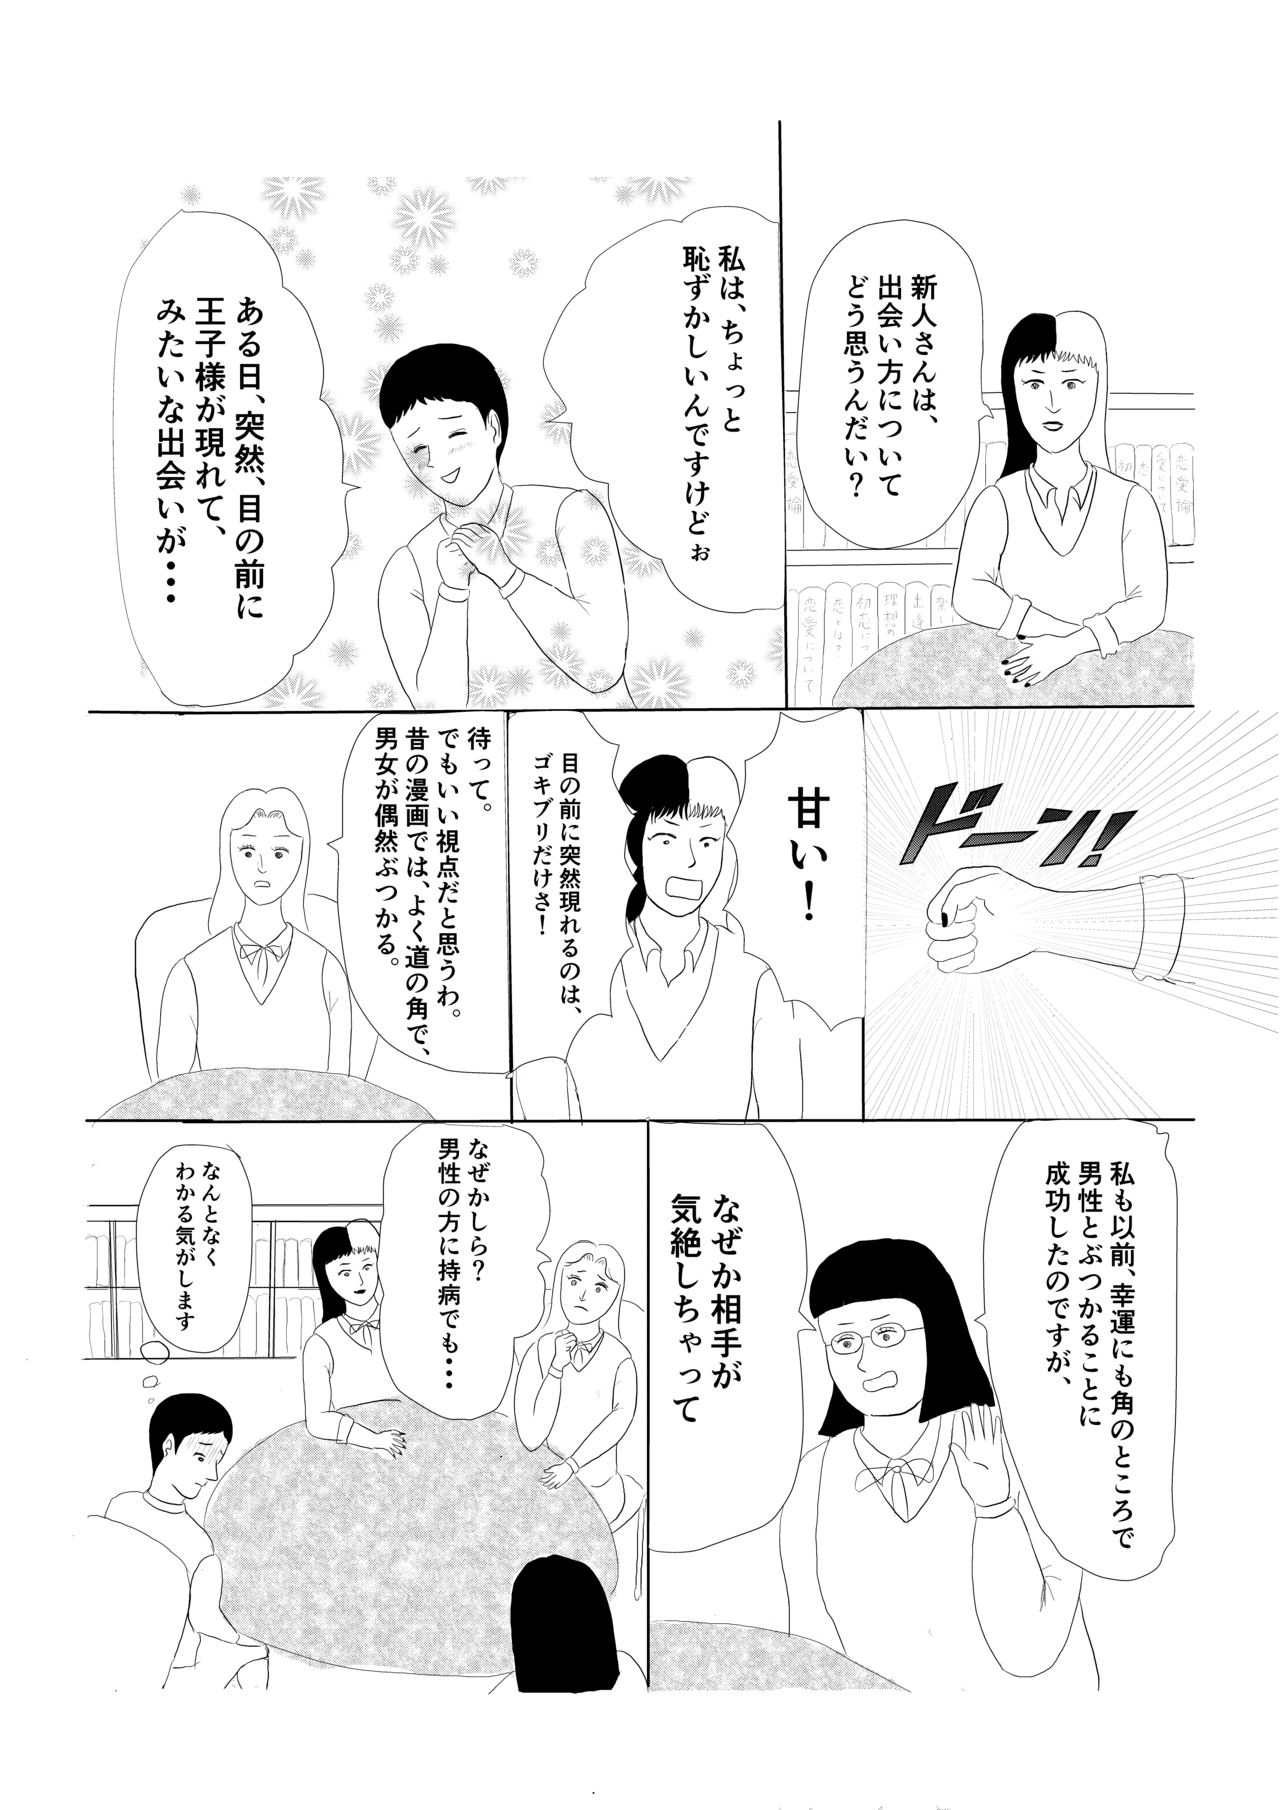 秘密結社恋愛クラブ_006